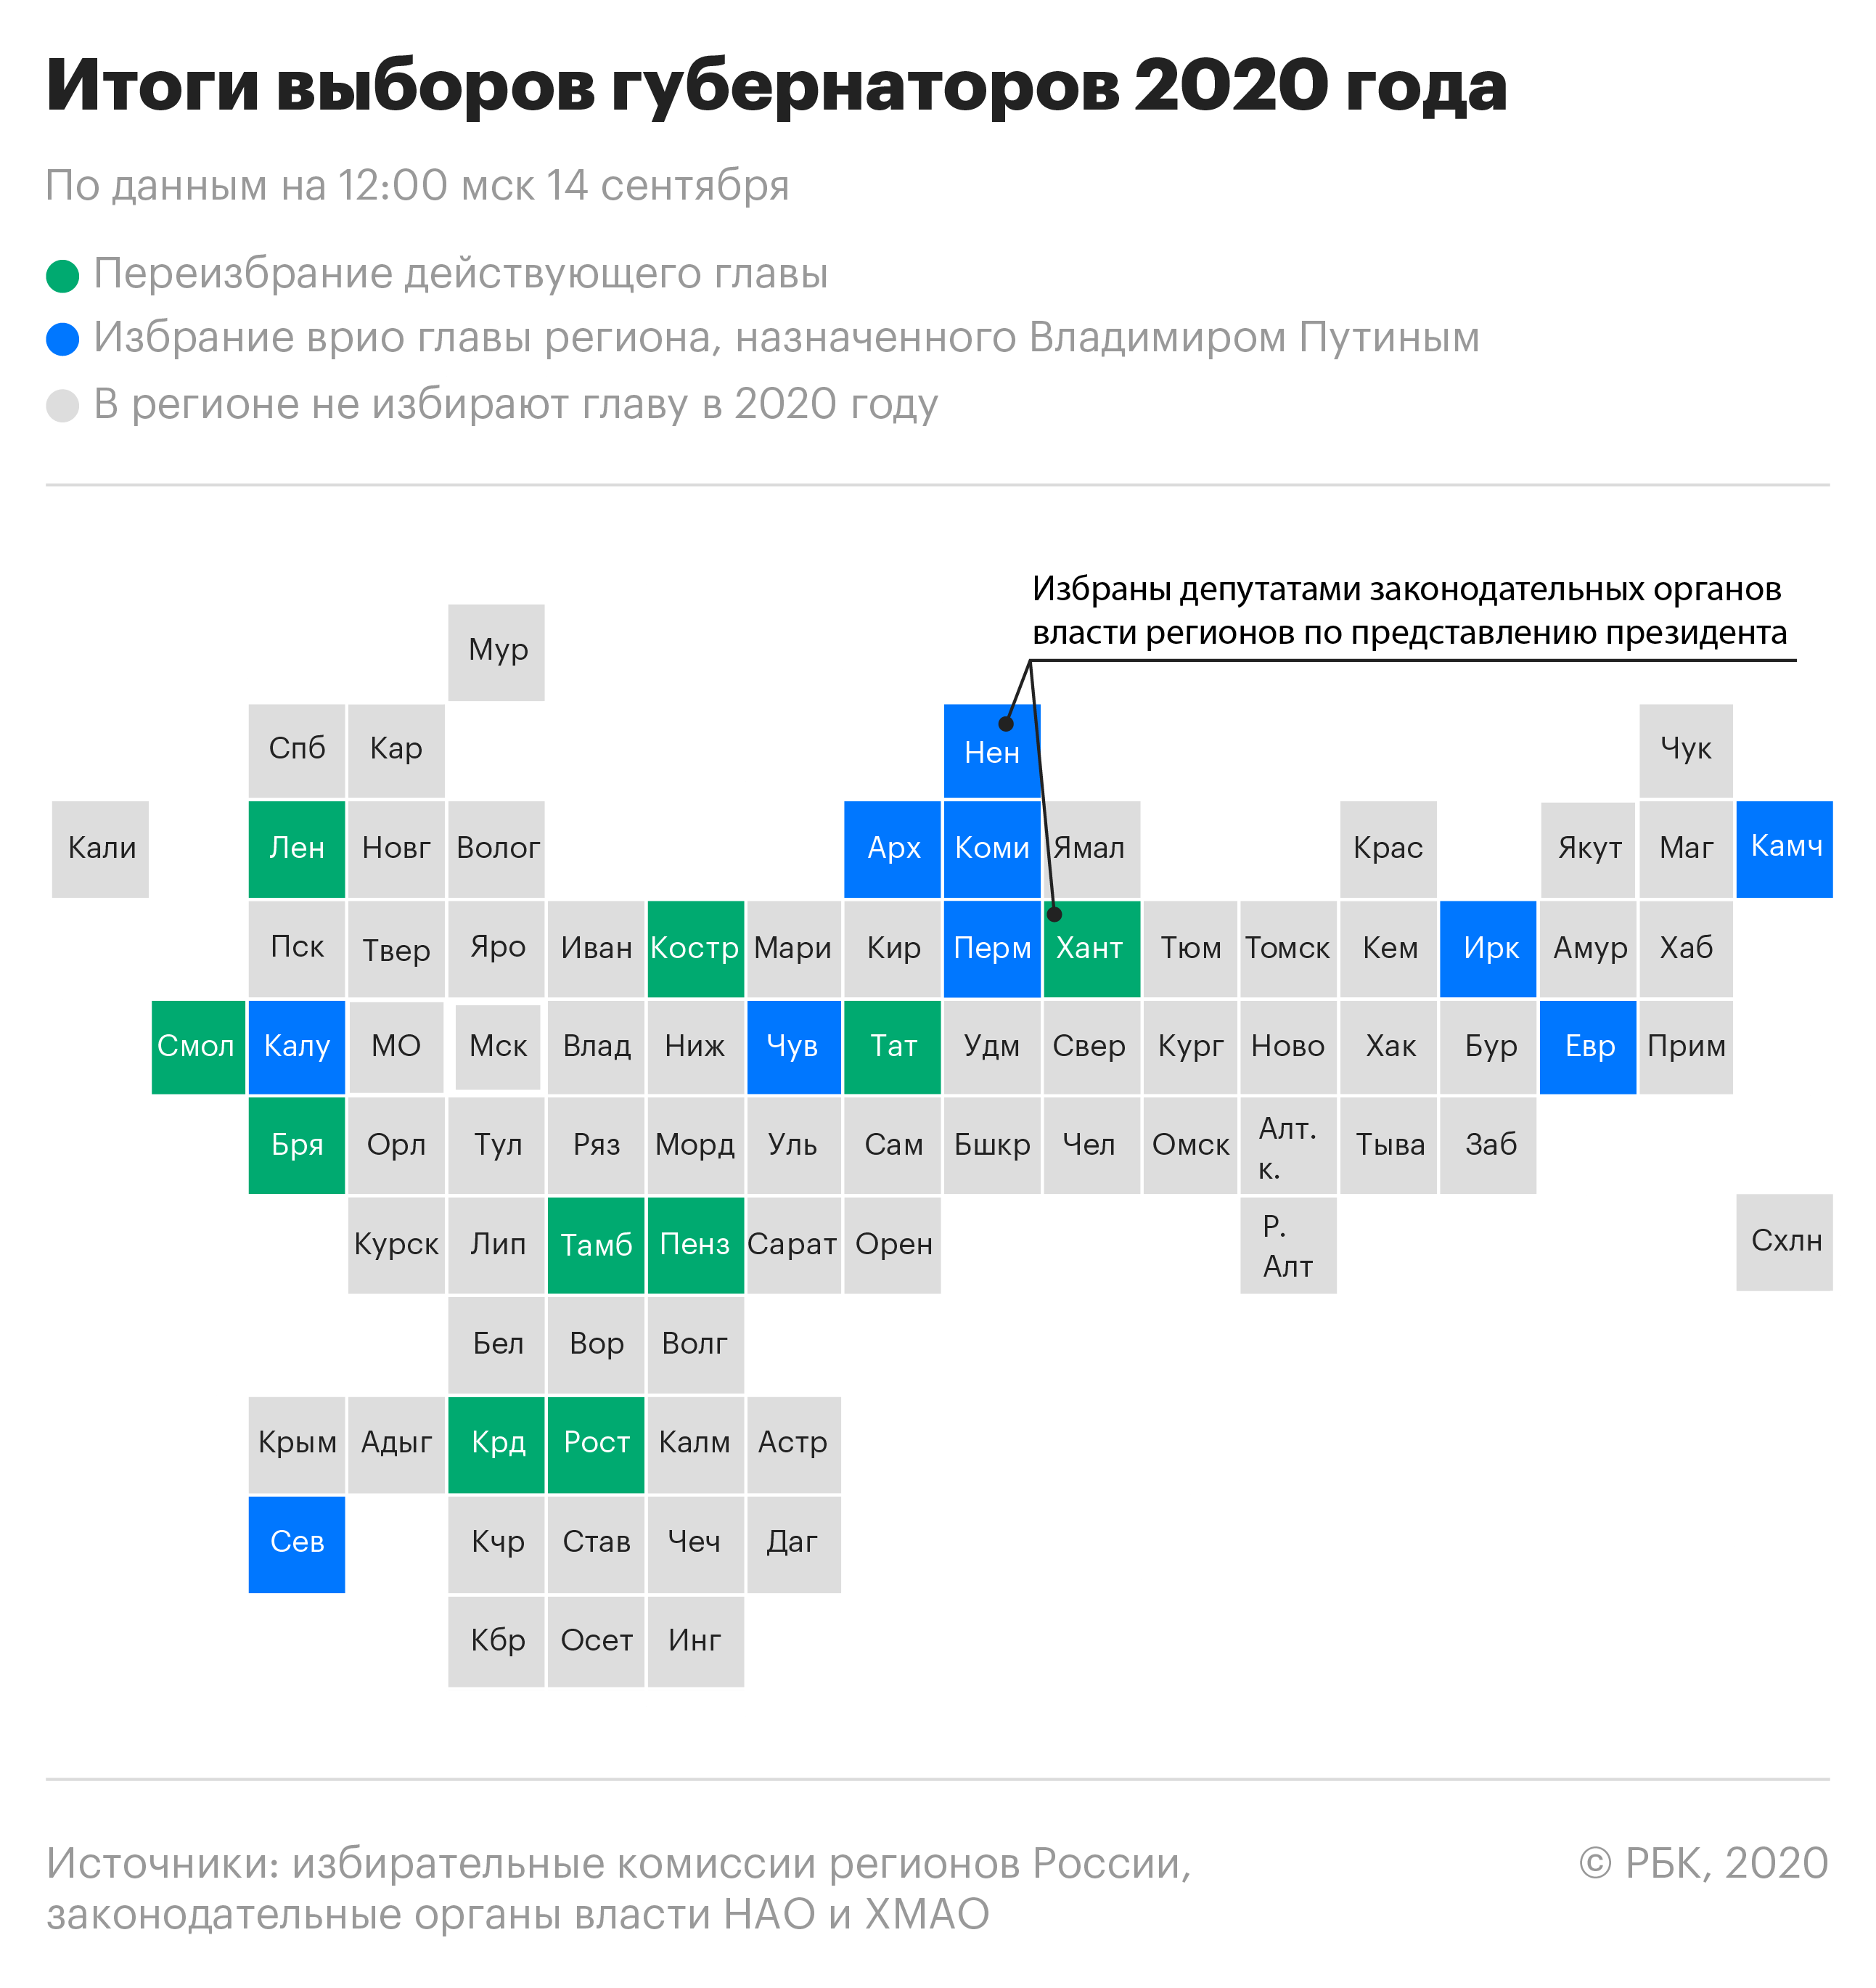 Итоги выборов губернаторов в России в 2020 году. Инфографика